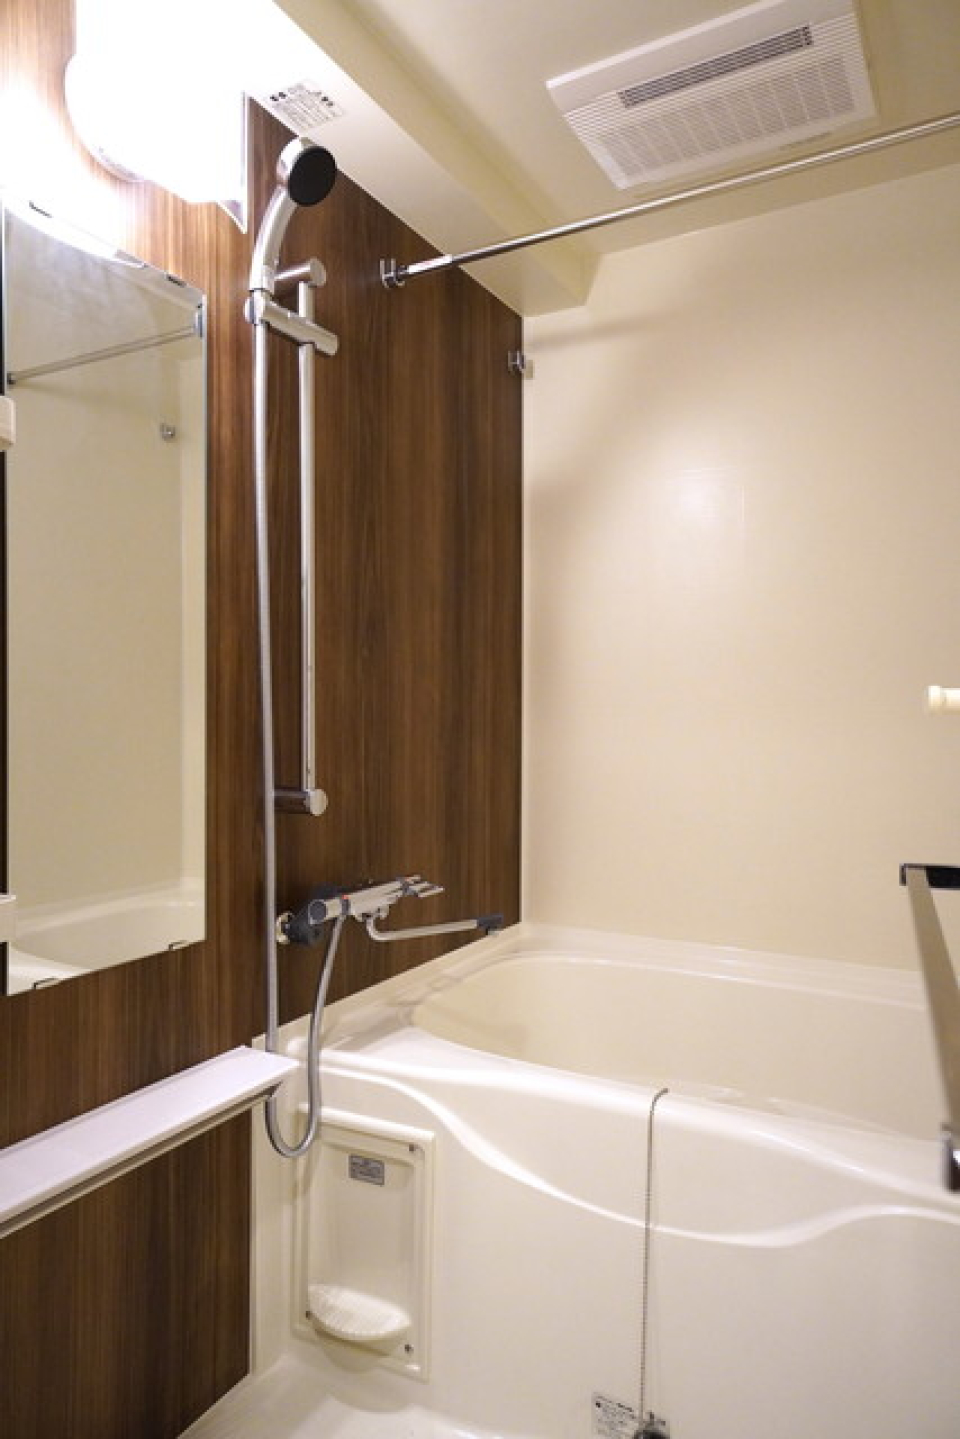 ダークトーンのパネルが使われた浴室です。※写真は同タイプ住戸です。